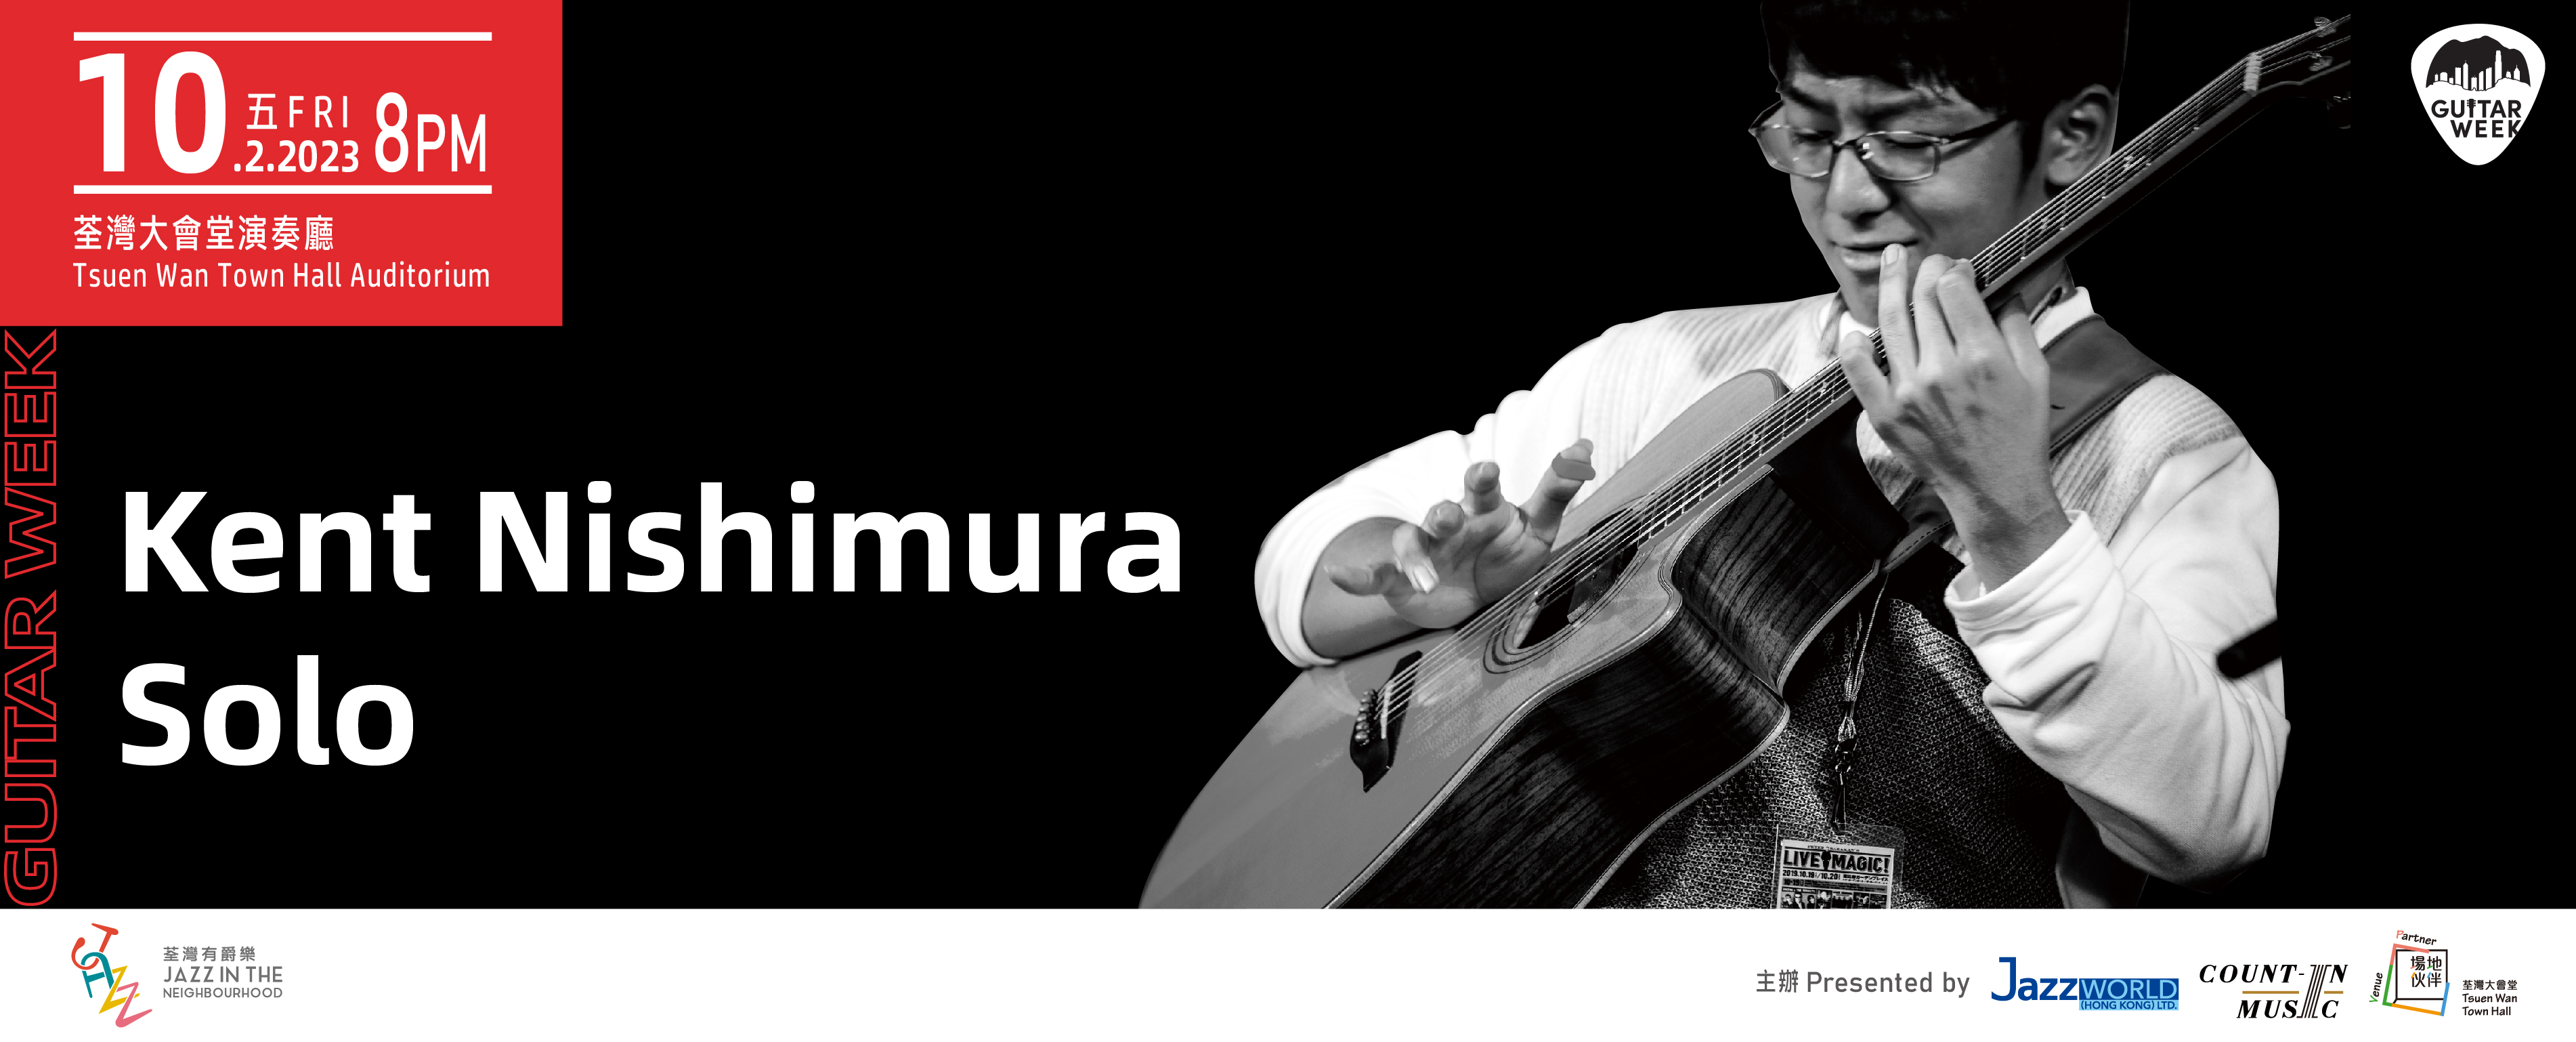 Guitar Week: Kent Nishimura Solo